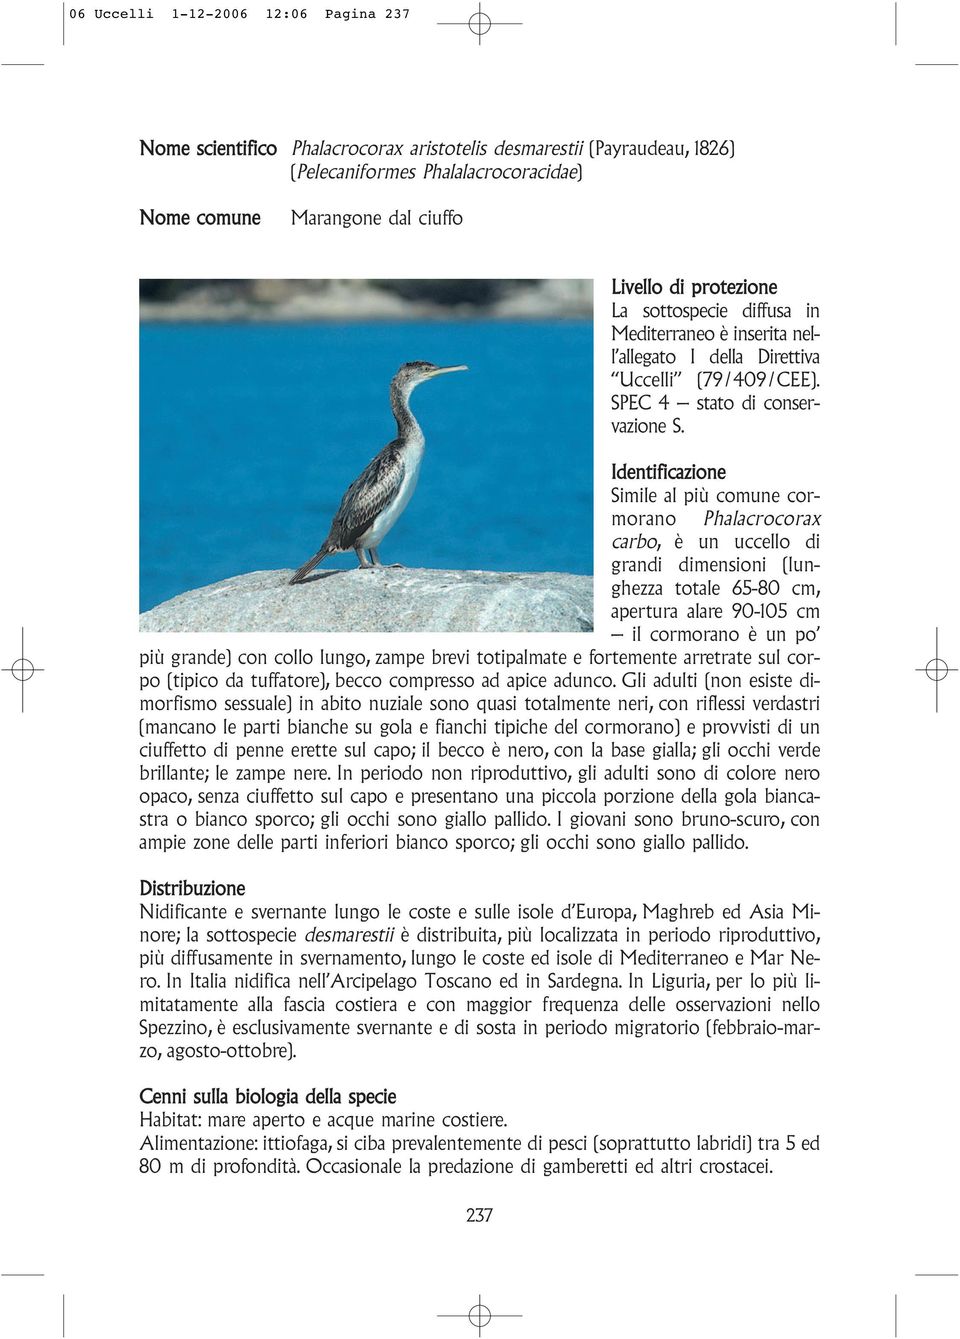 Identificazione Simile al più comune cormorano Phalacrocorax carbo, è un uccello di grandi dimensioni (lunghezza totale 65-80 cm, apertura alare 90-105 cm il cormorano è un po più grande) con collo